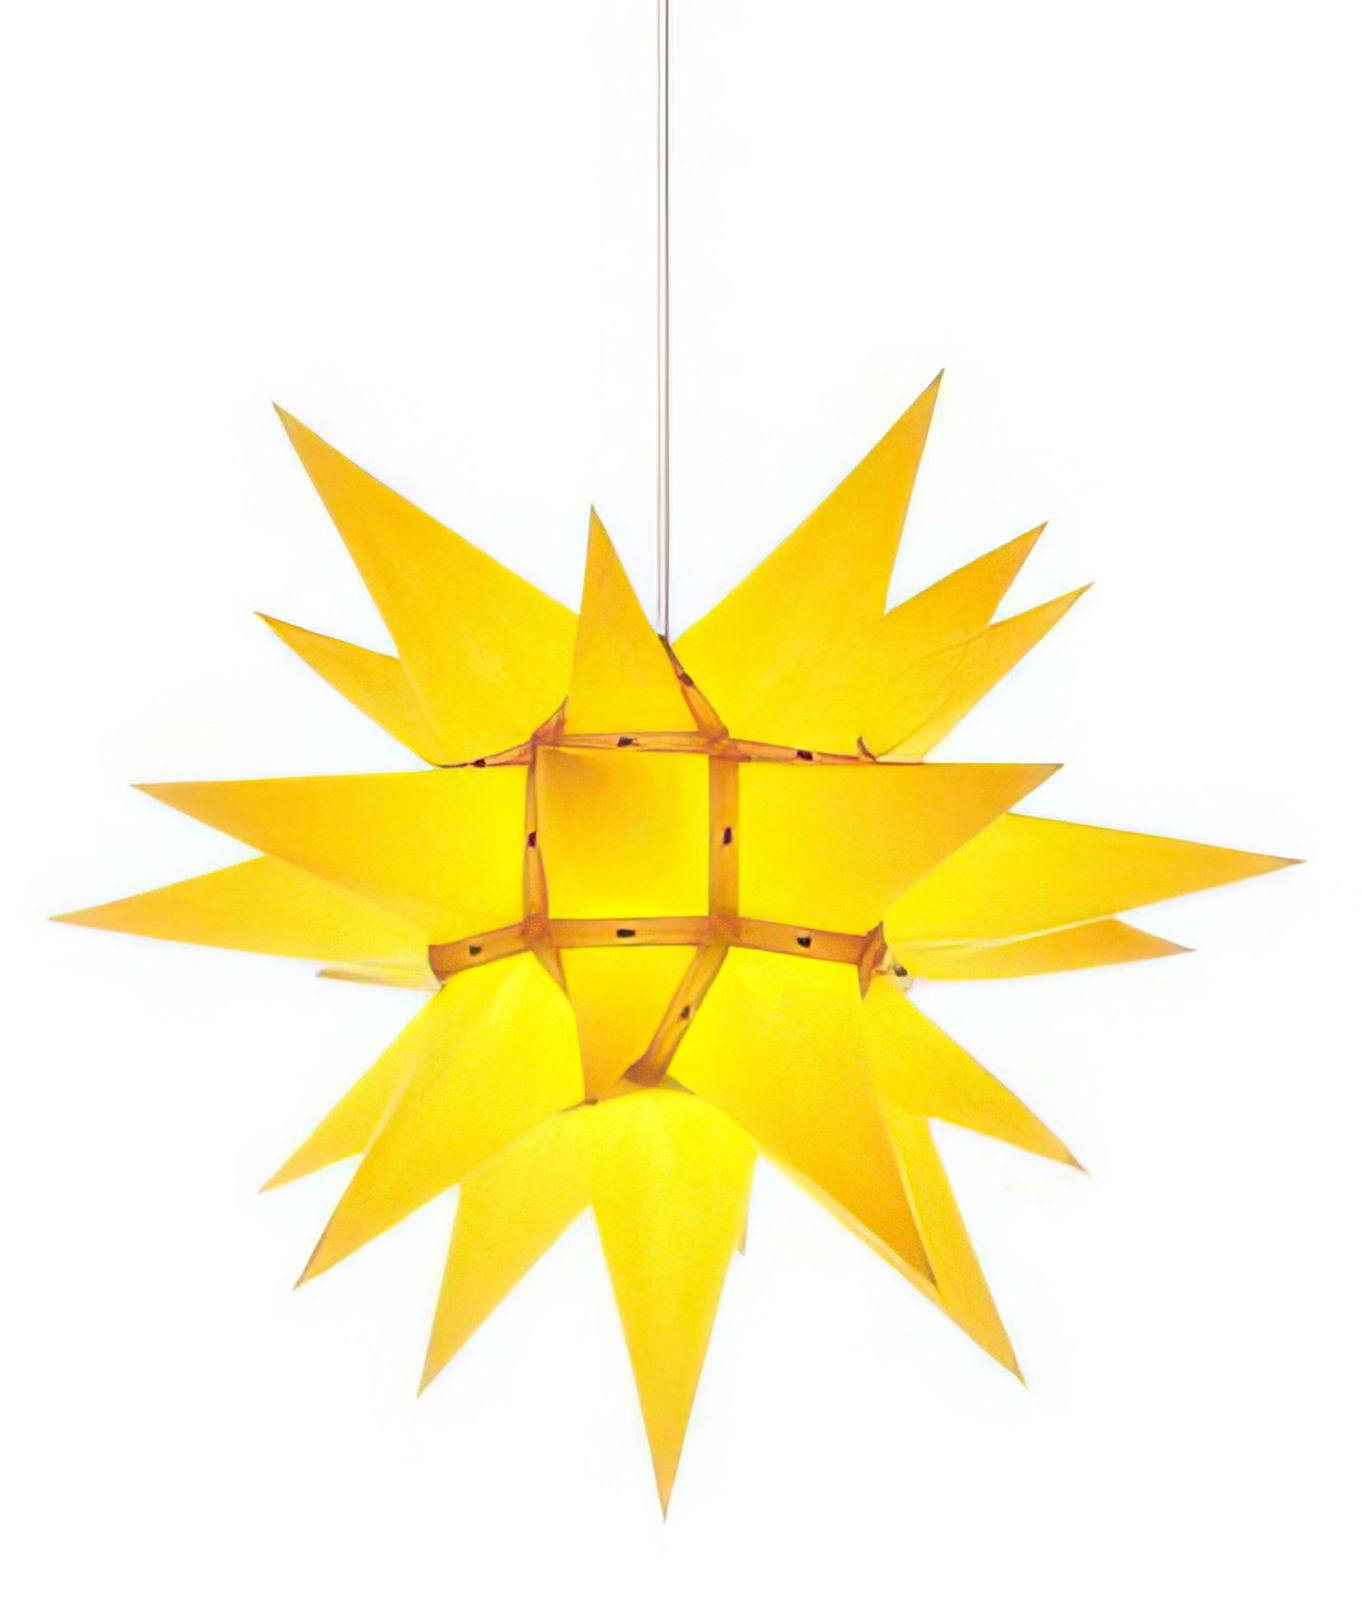 Herrnhuter Stern i4 (Bausatz) Ø 40 cm Papierstern - gelb Wunderschöner und sehr hochwertiger Weihnachtsstern für Innen/Indoor - das Original mit 25 Zacken